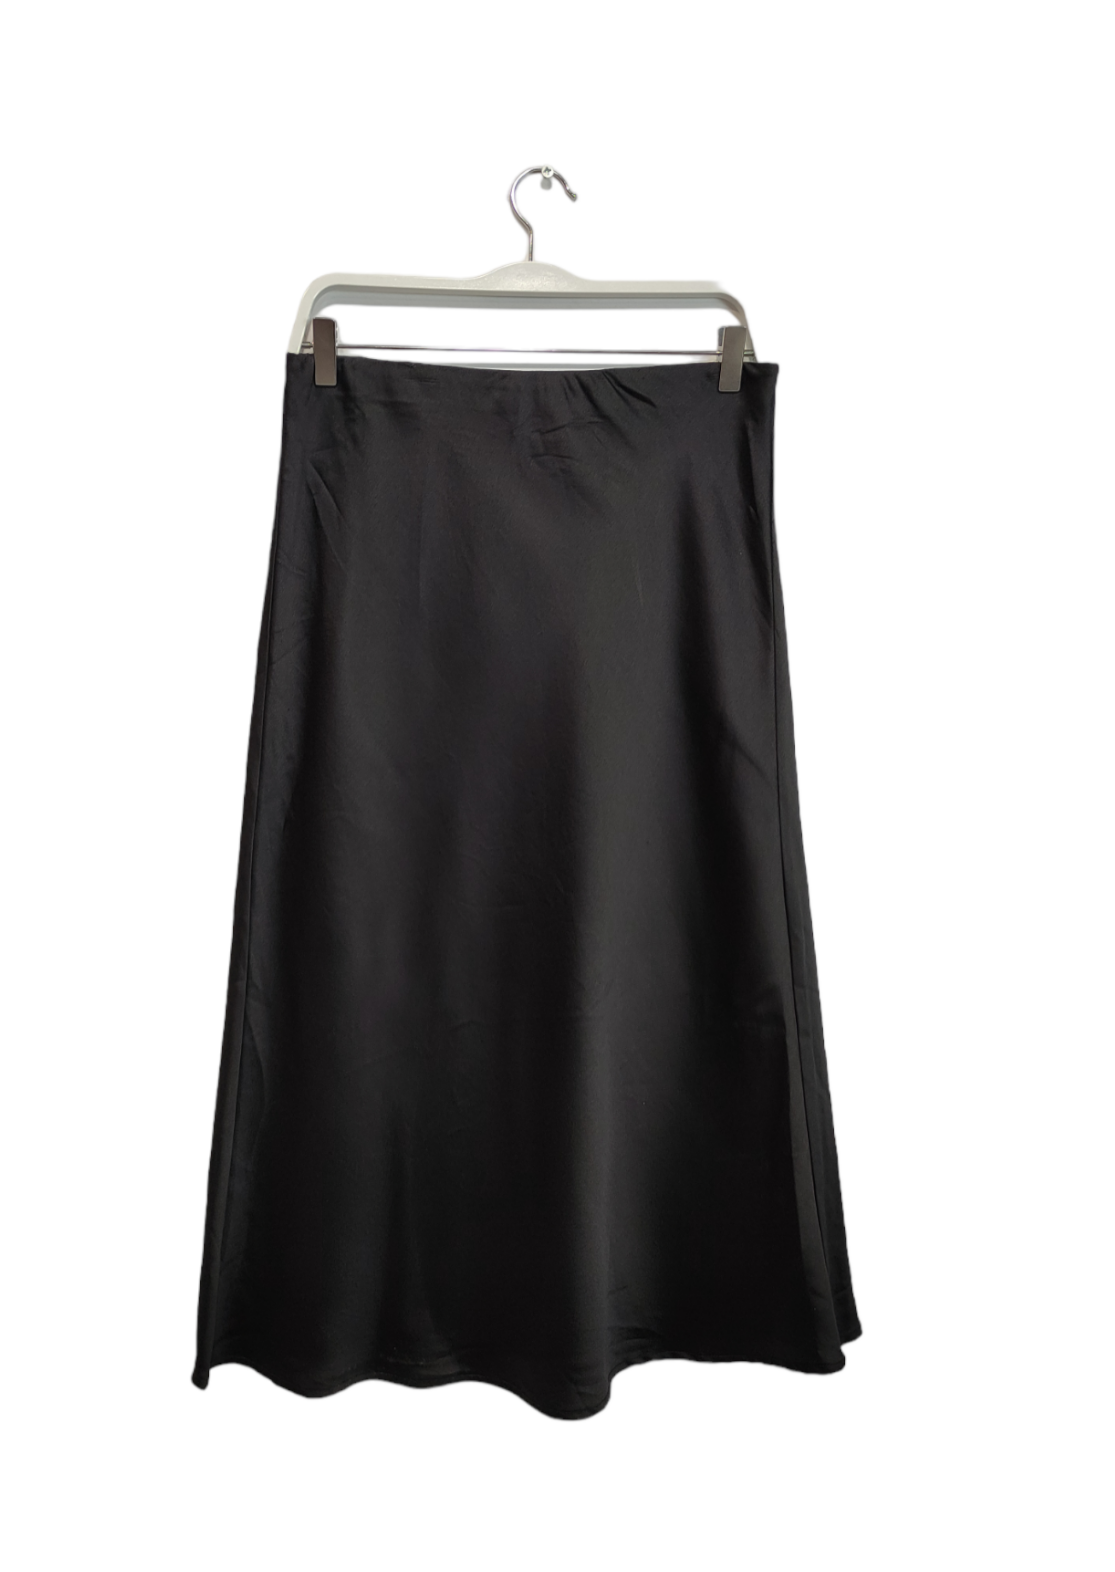 Σατέν Midi Φούστα DECJUBA σε Μαύρο Χρώμα (Large)